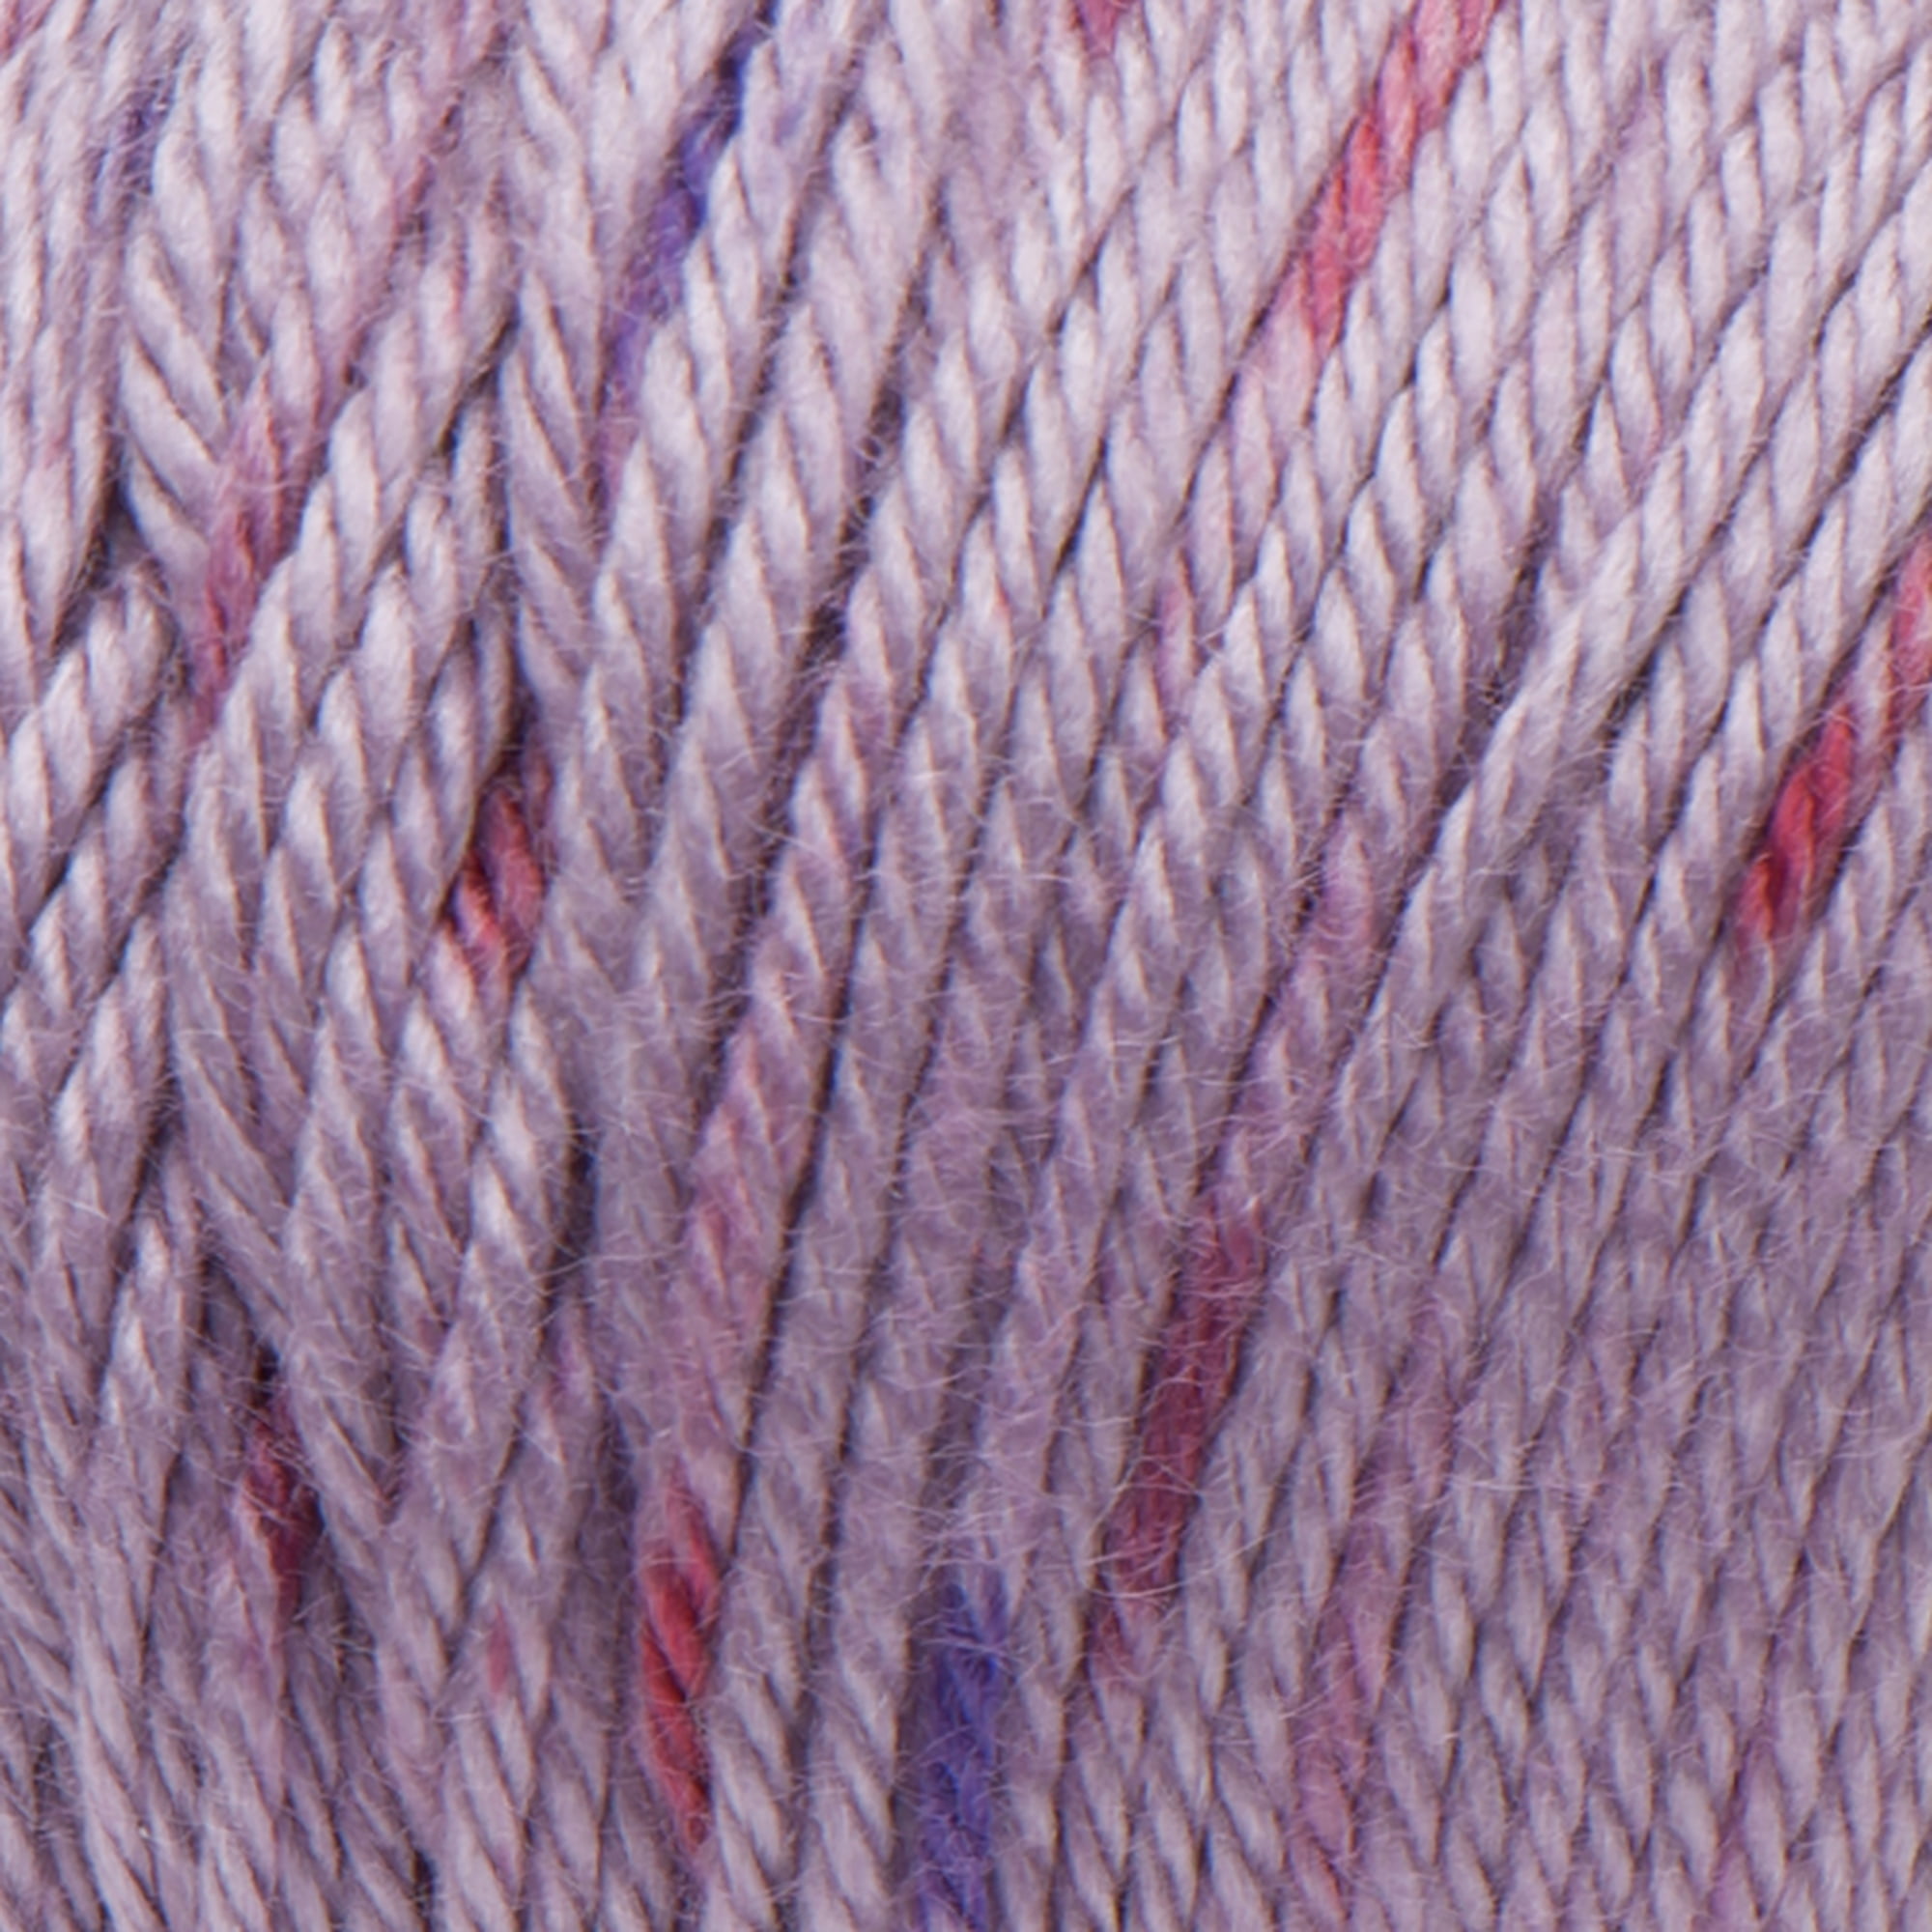 Caron Simply Soft Speckle Yarn - Galaxy